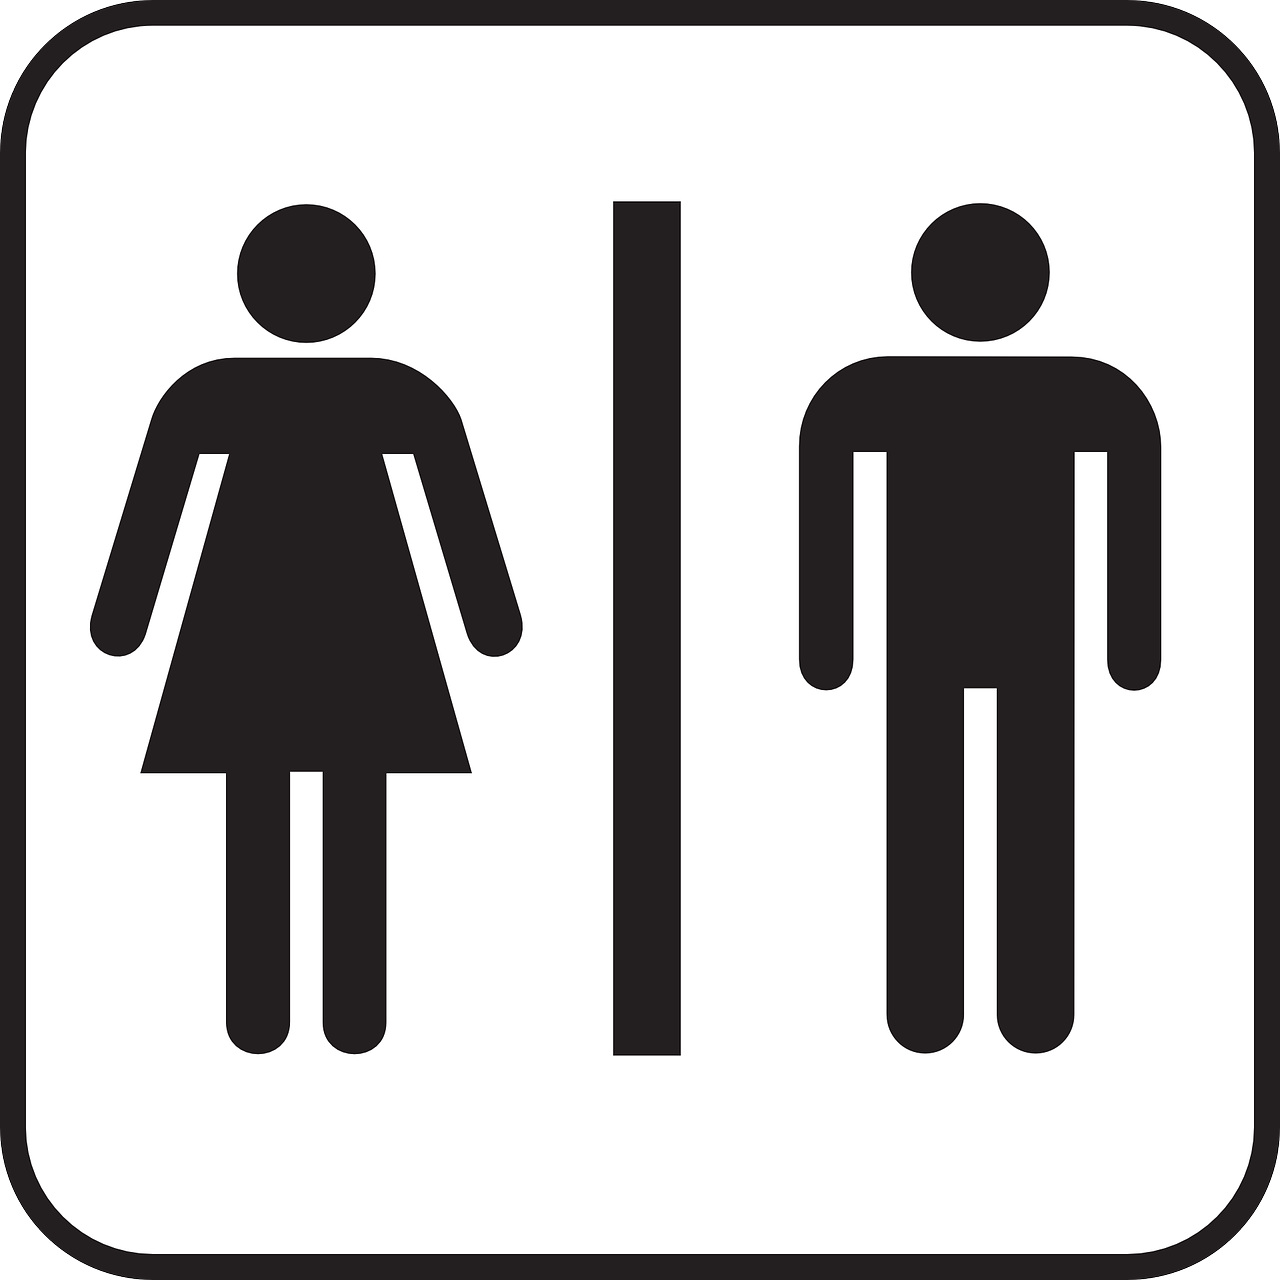 Auf diesem Bild sieht man das Toiletten Symbol